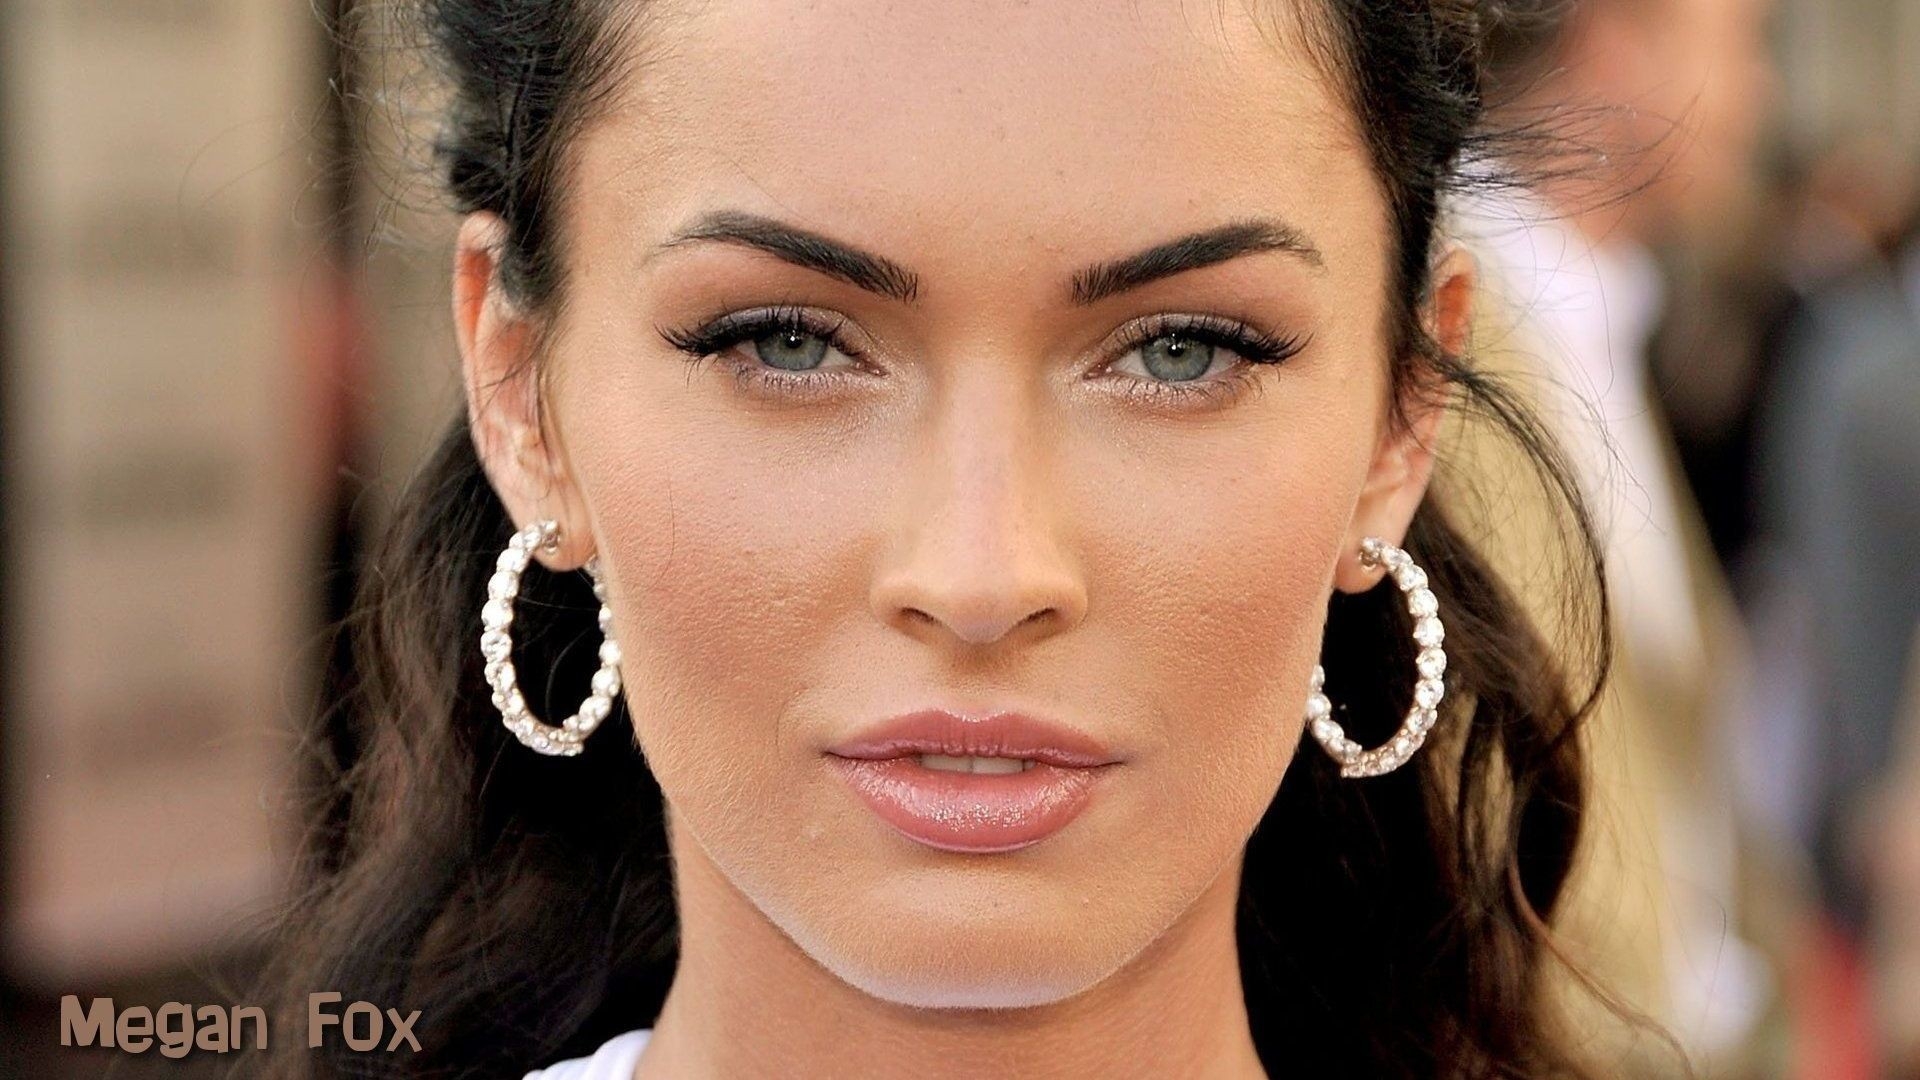 Wallpaper Megan Fox Face Make Up Full HD 1080p